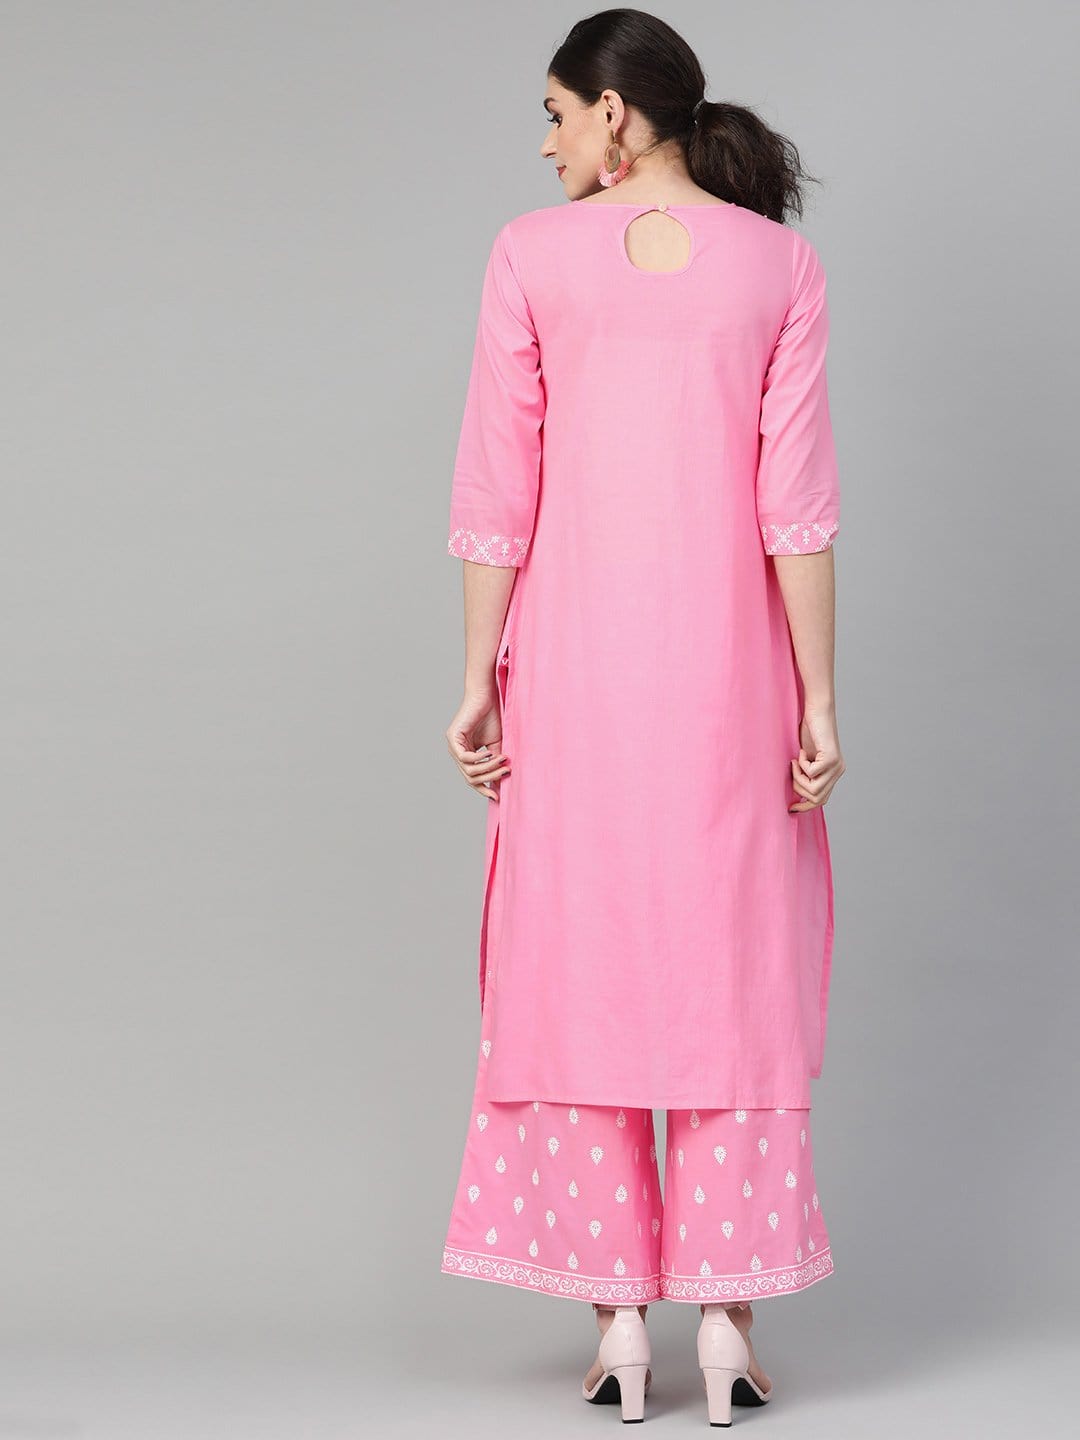 Women's Light Pink Khari Printed Straight Kurta  With Overall Printed Straight Palazzo - Varanga